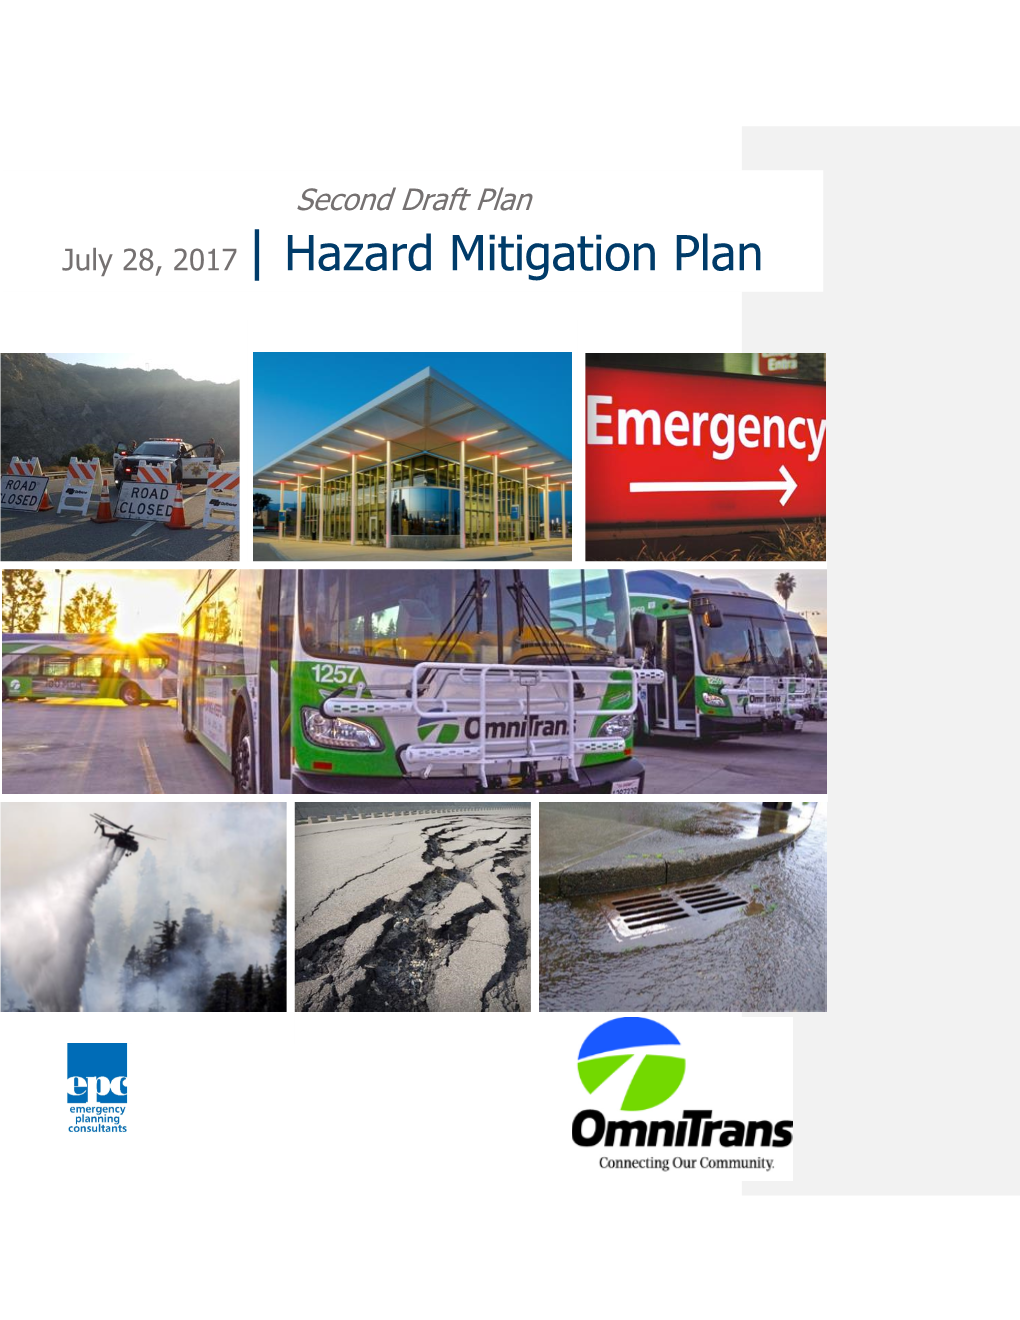 View the 2017 Hazard Mitigation Plan